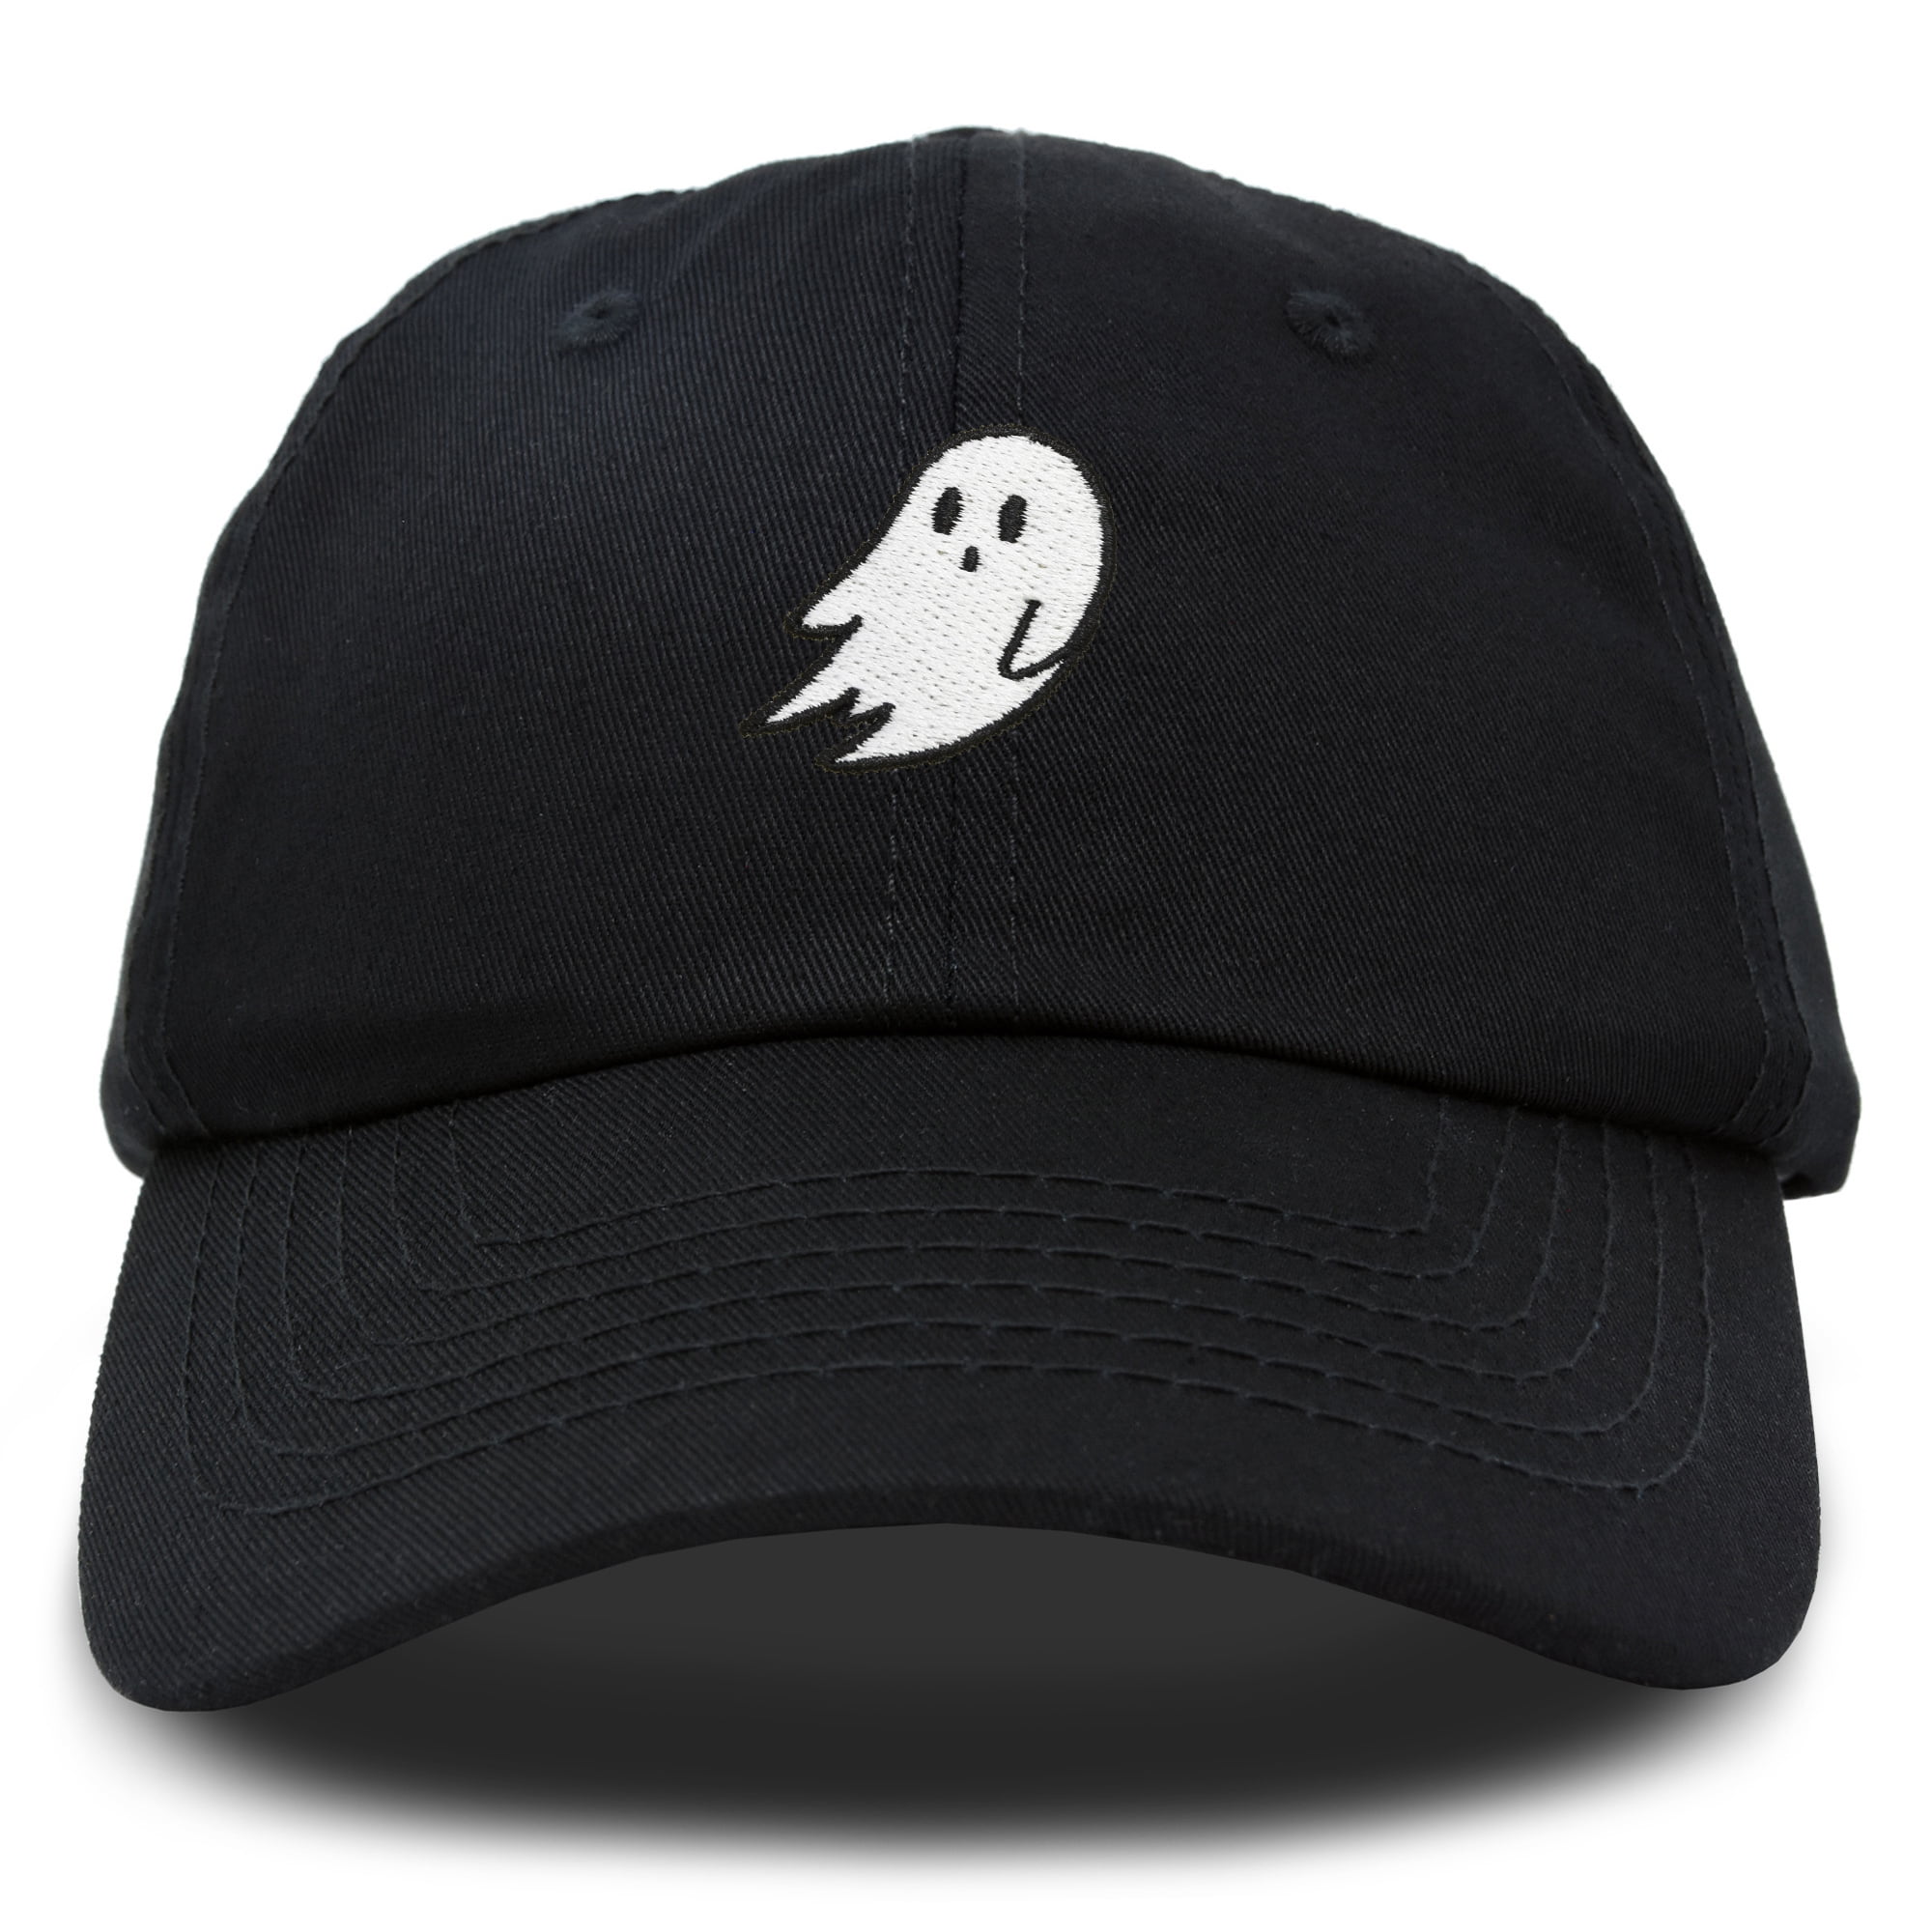 ghost hat aliexpress